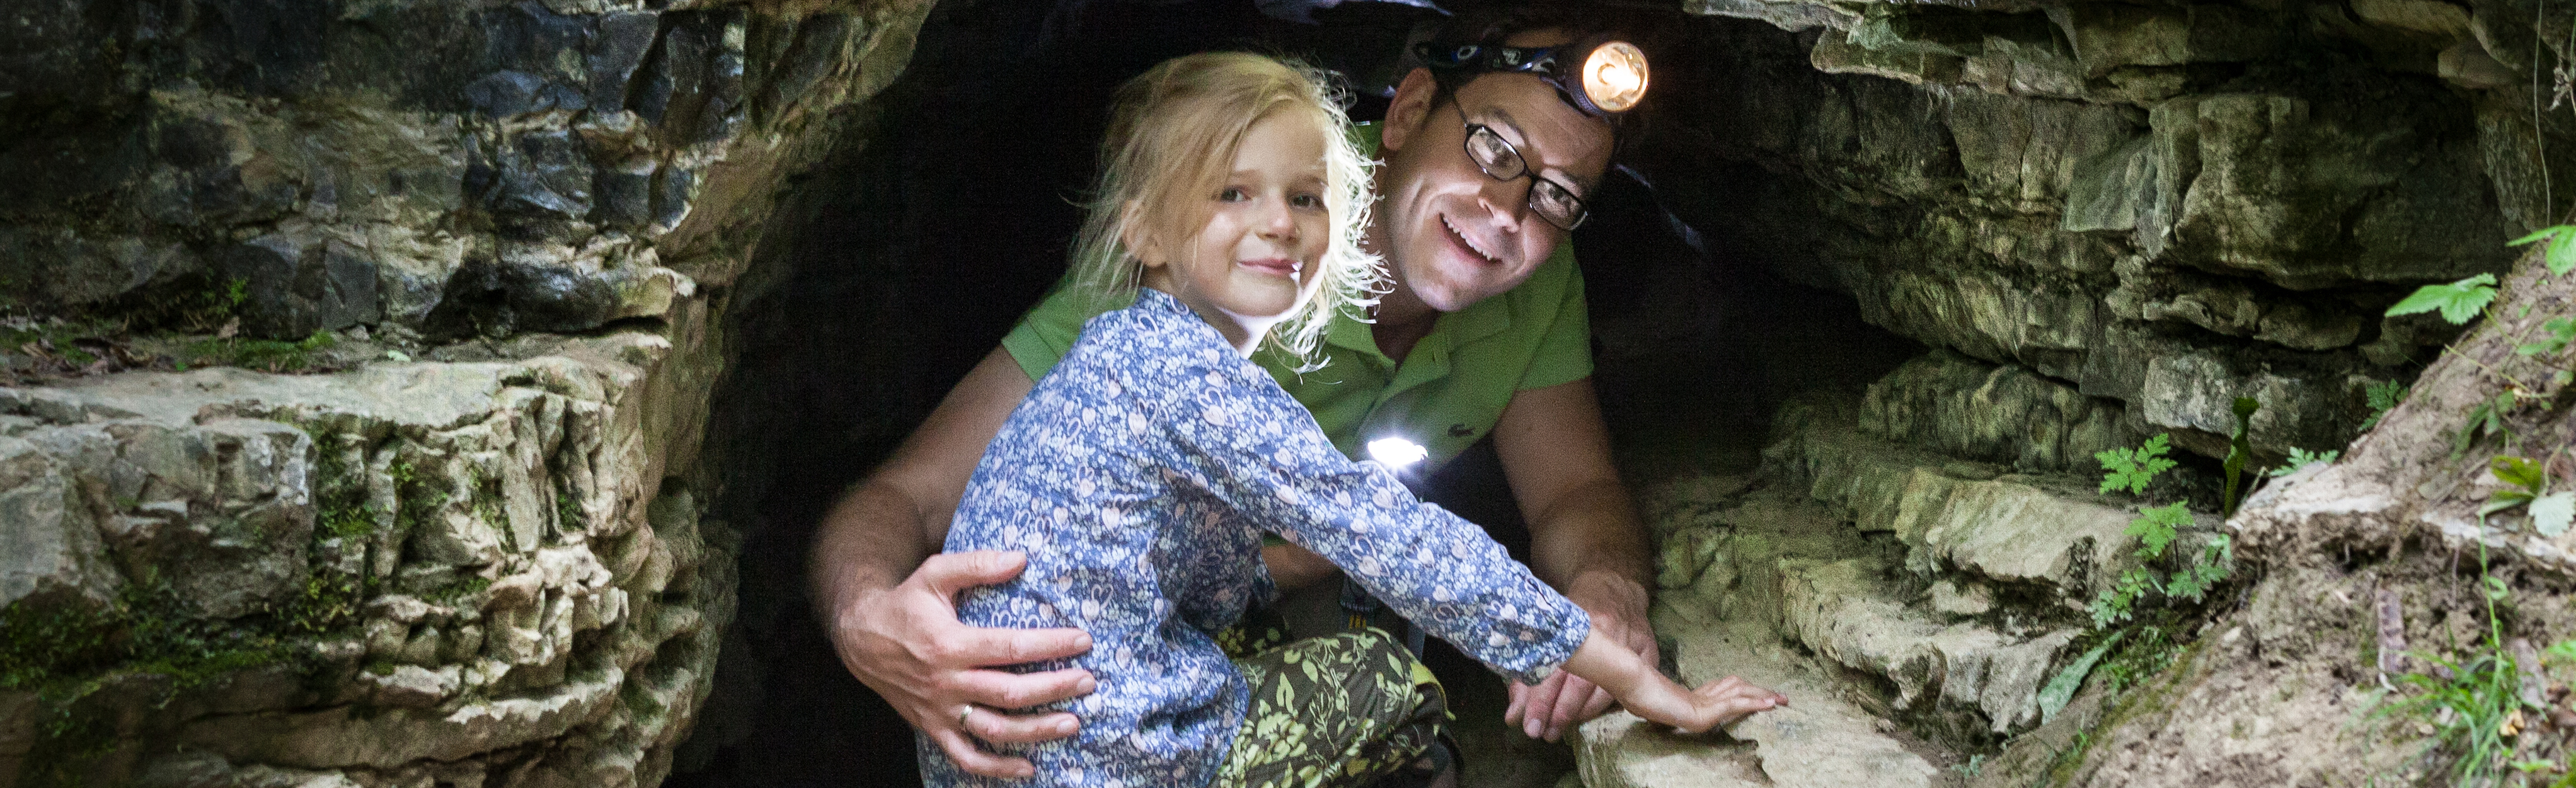 Kind und Mann mit Stirnlampe in der Siebentälerhöhle